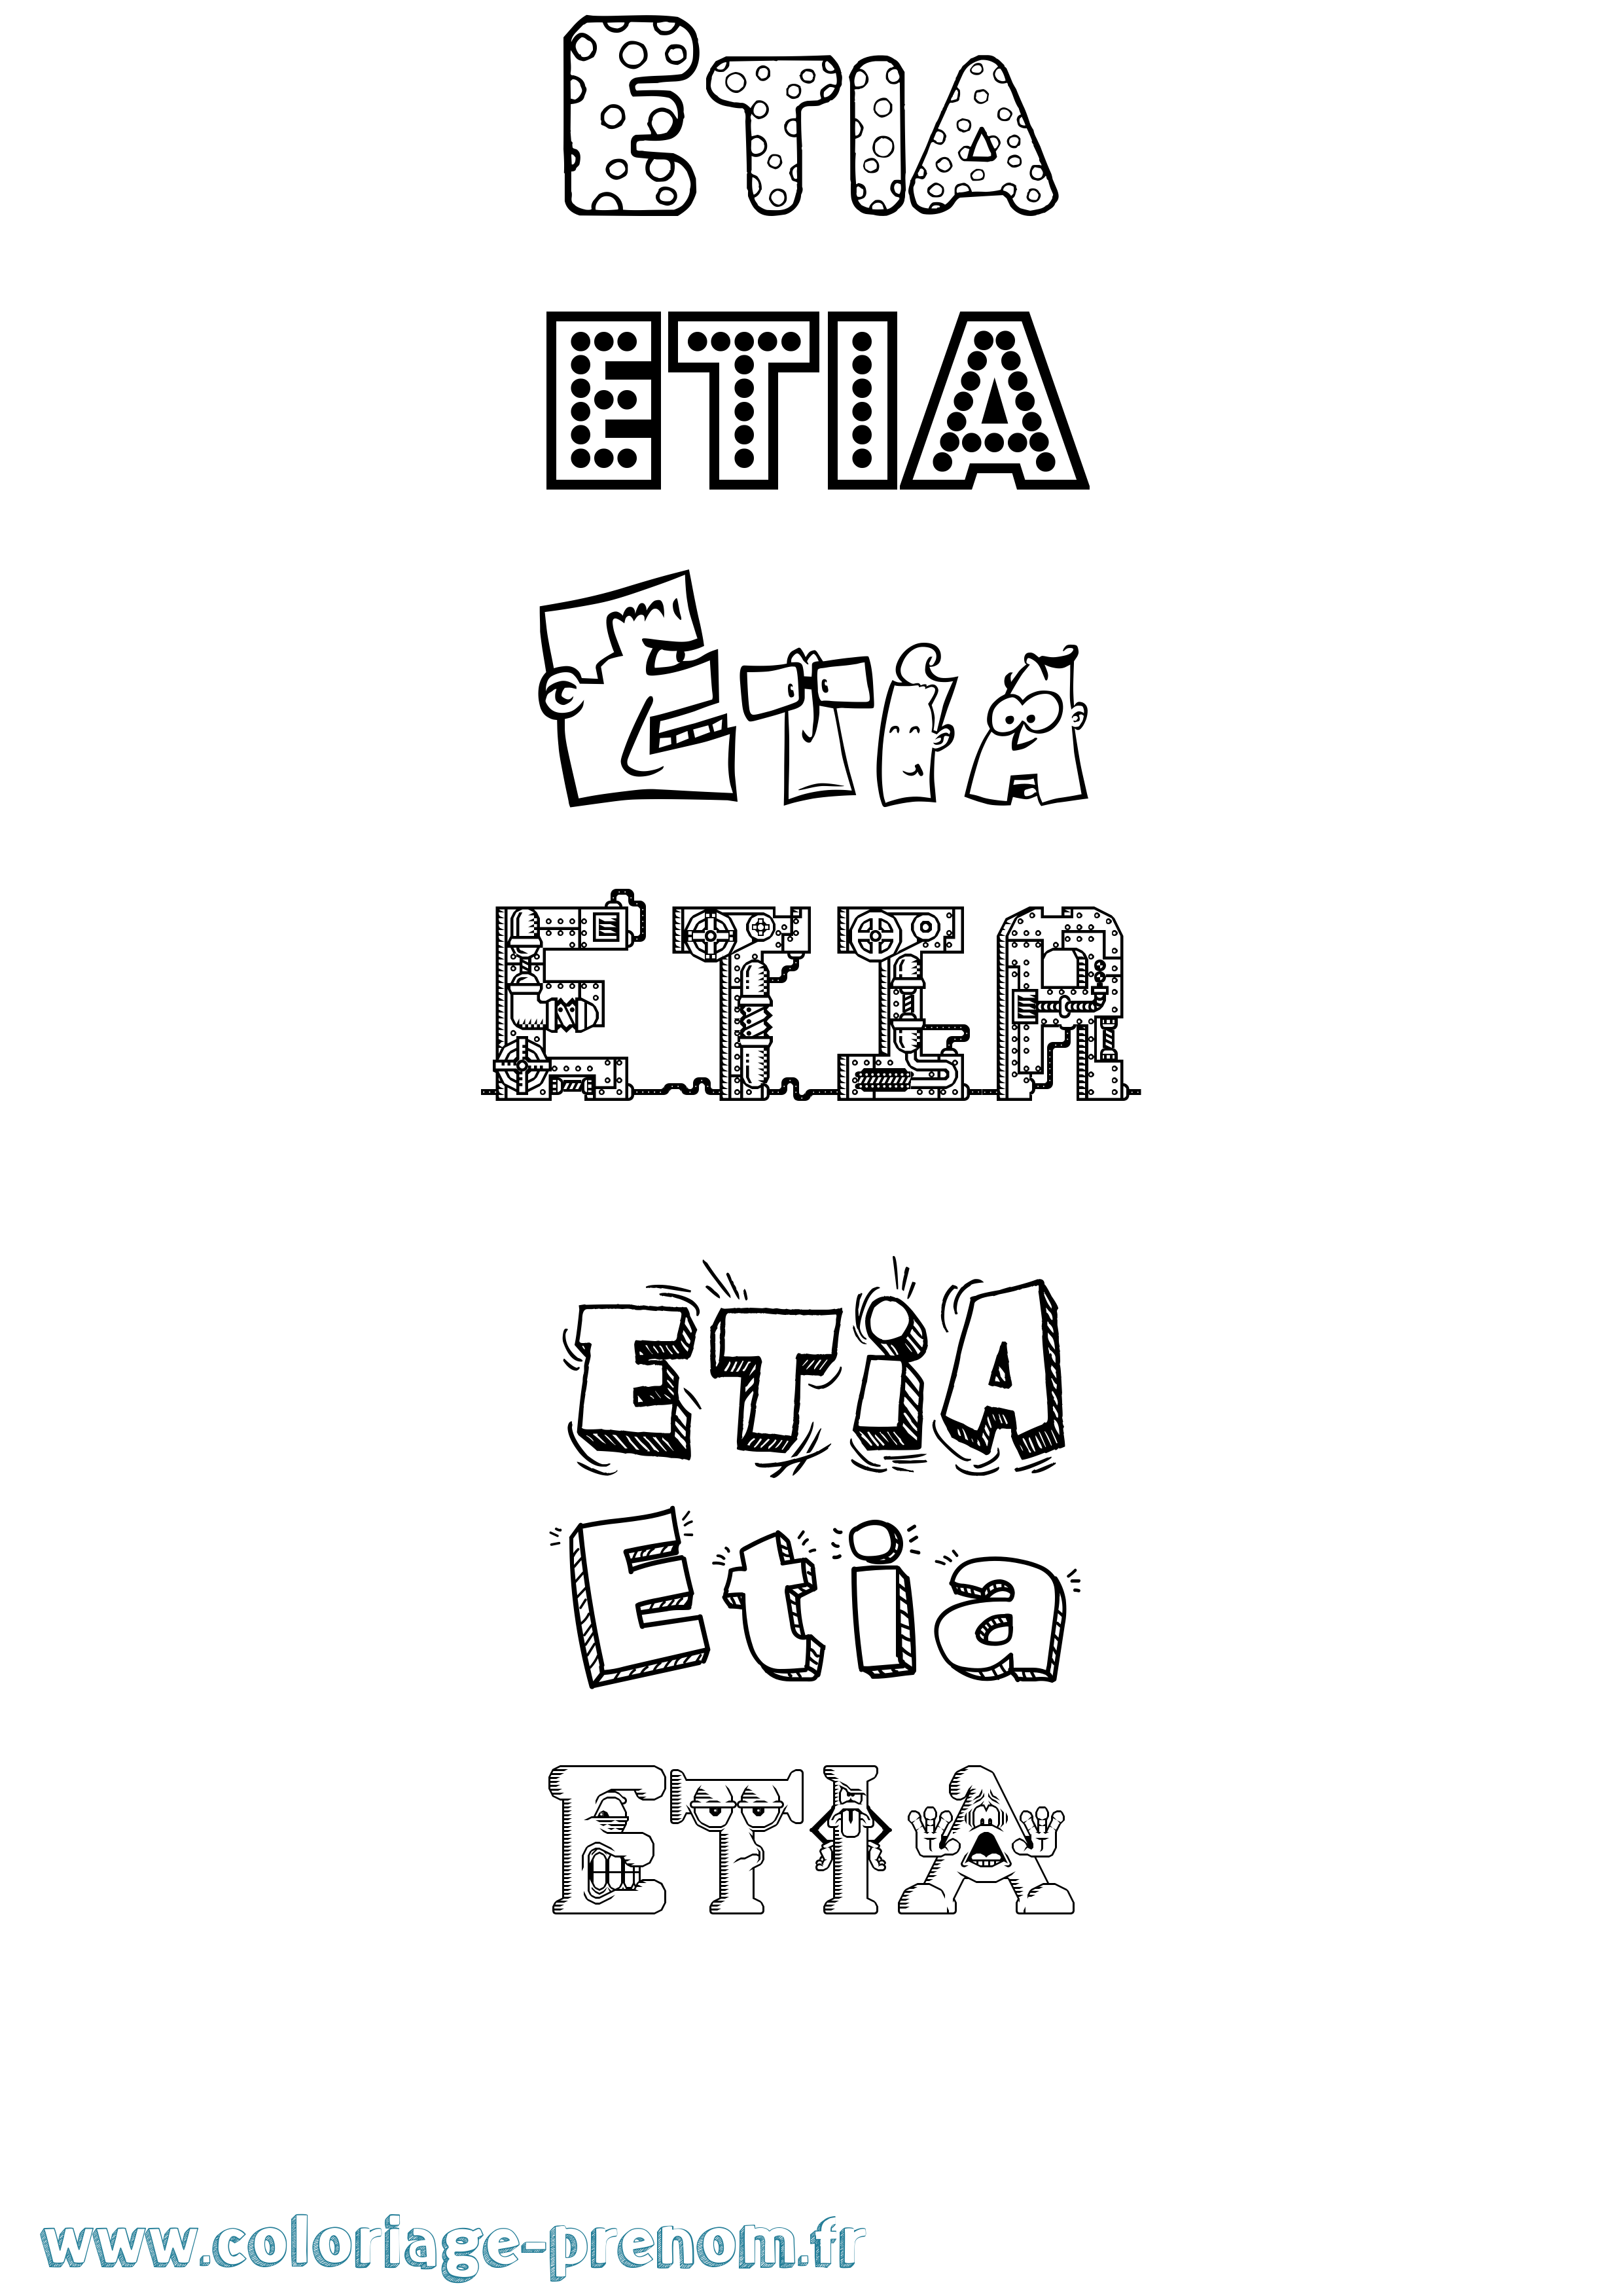 Coloriage prénom Etia Fun